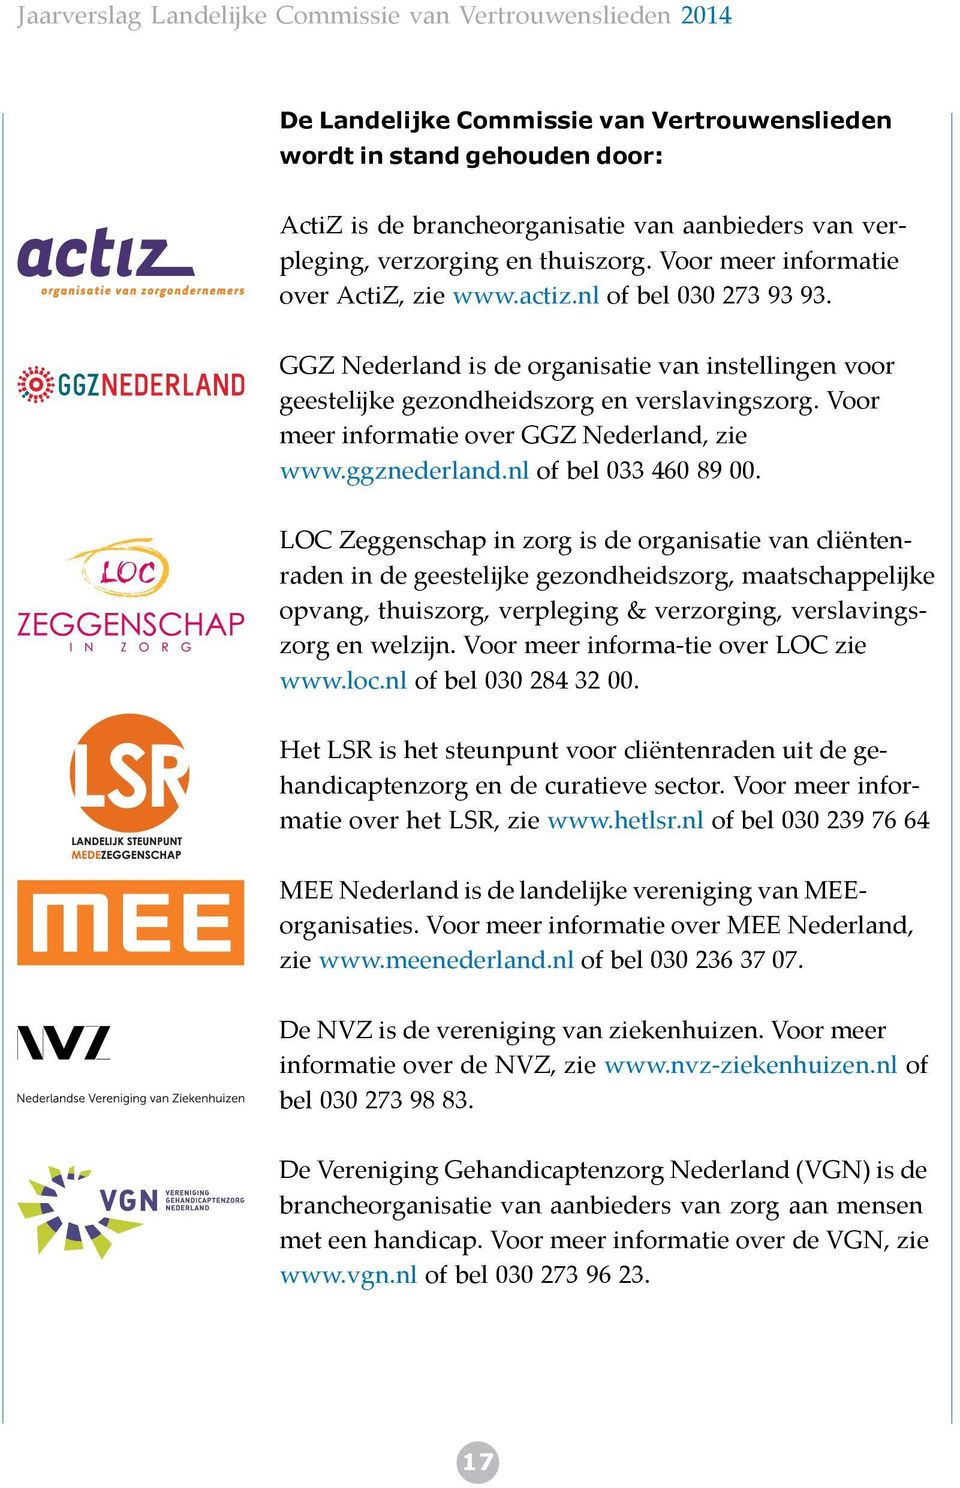 Voor meer informatie over GGZ Nederland, zie www.ggznederland.nl of bel 033 460 89 00.